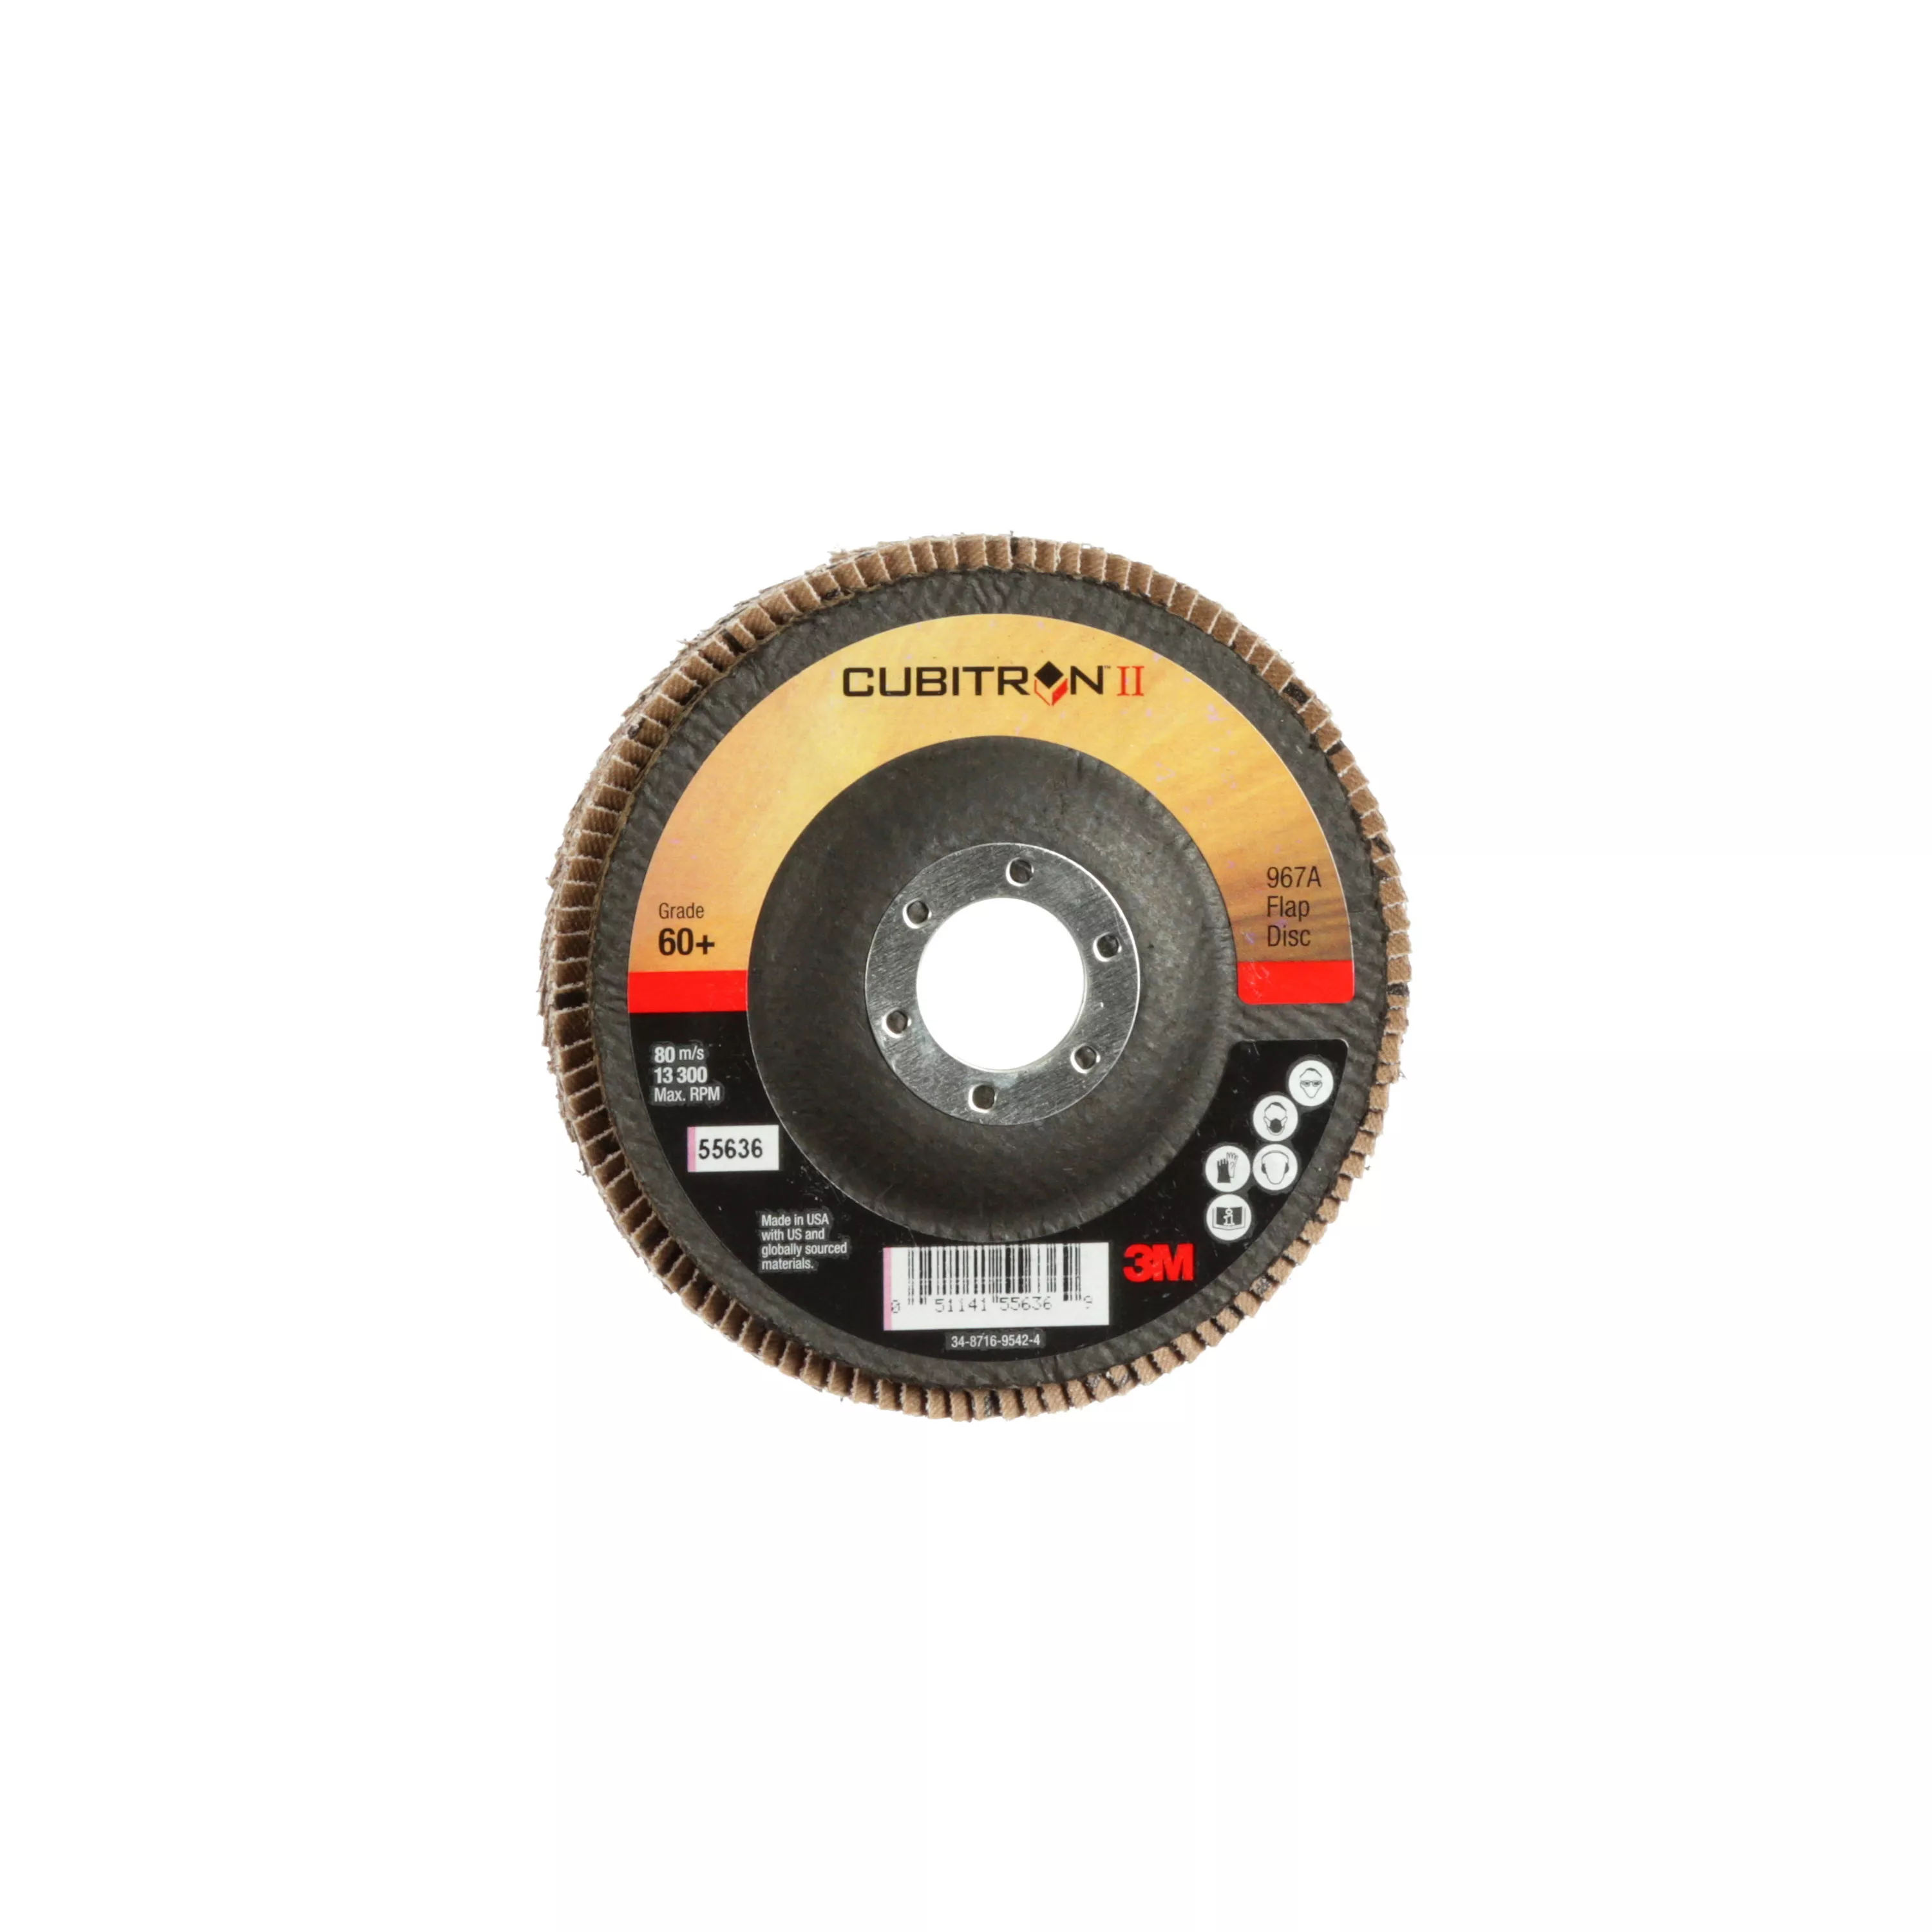 3M™ Cubitron™ II Flap Disc 967A, 60+, T27, 4-1/2 in x 7/8 in, Giant, 10
ea/Case